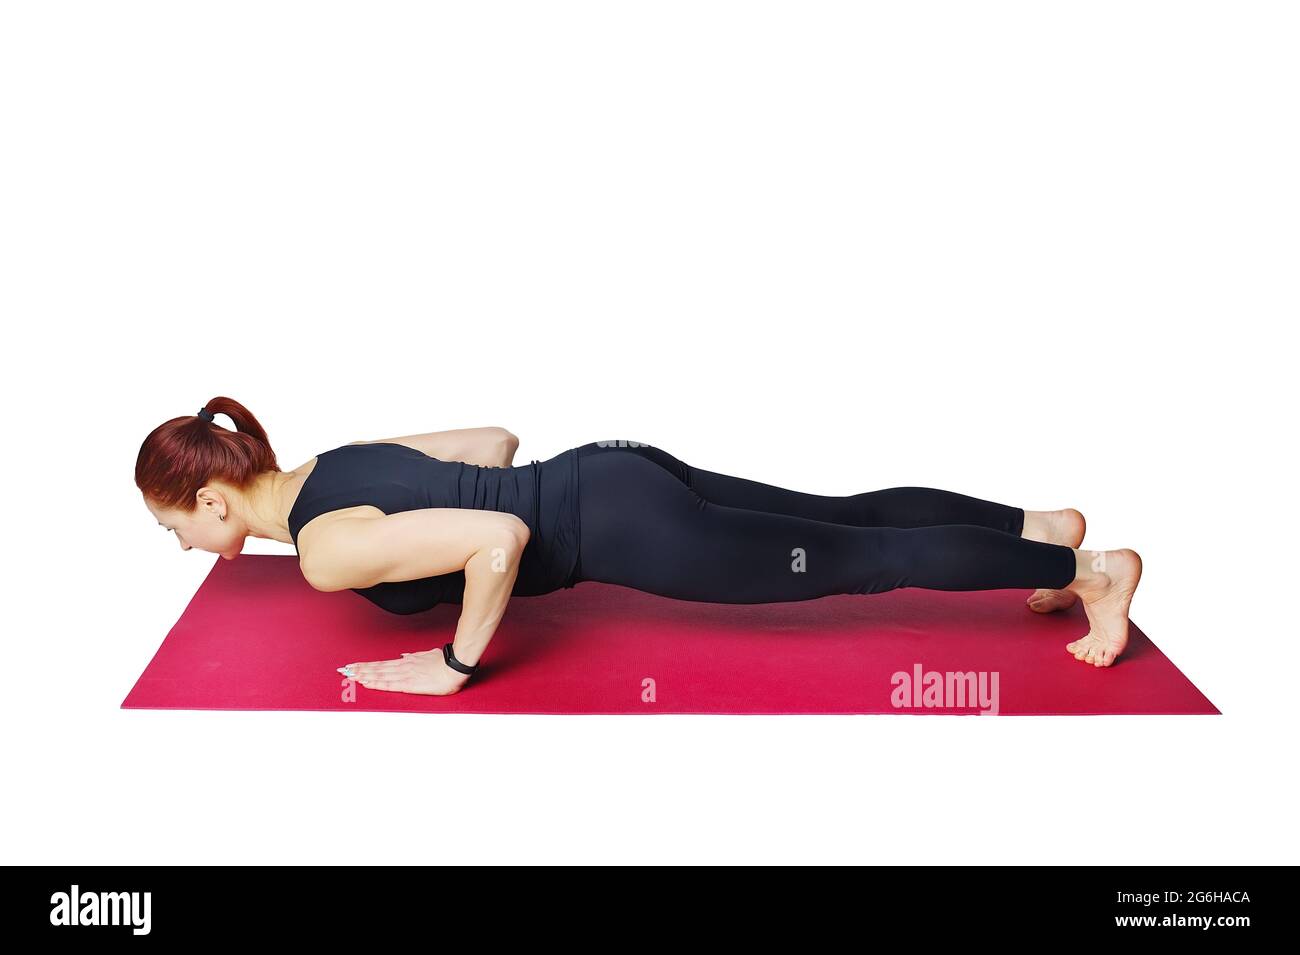 Il s'agit d'une femme élancée qui fait des push-up avec une poignée étroite sur un tapis de gym. Renforcer les muscles des triceps et de la poitrine. Isolé sur un fond blanc. Aide visuelle. Posture de Chaturanga Banque D'Images